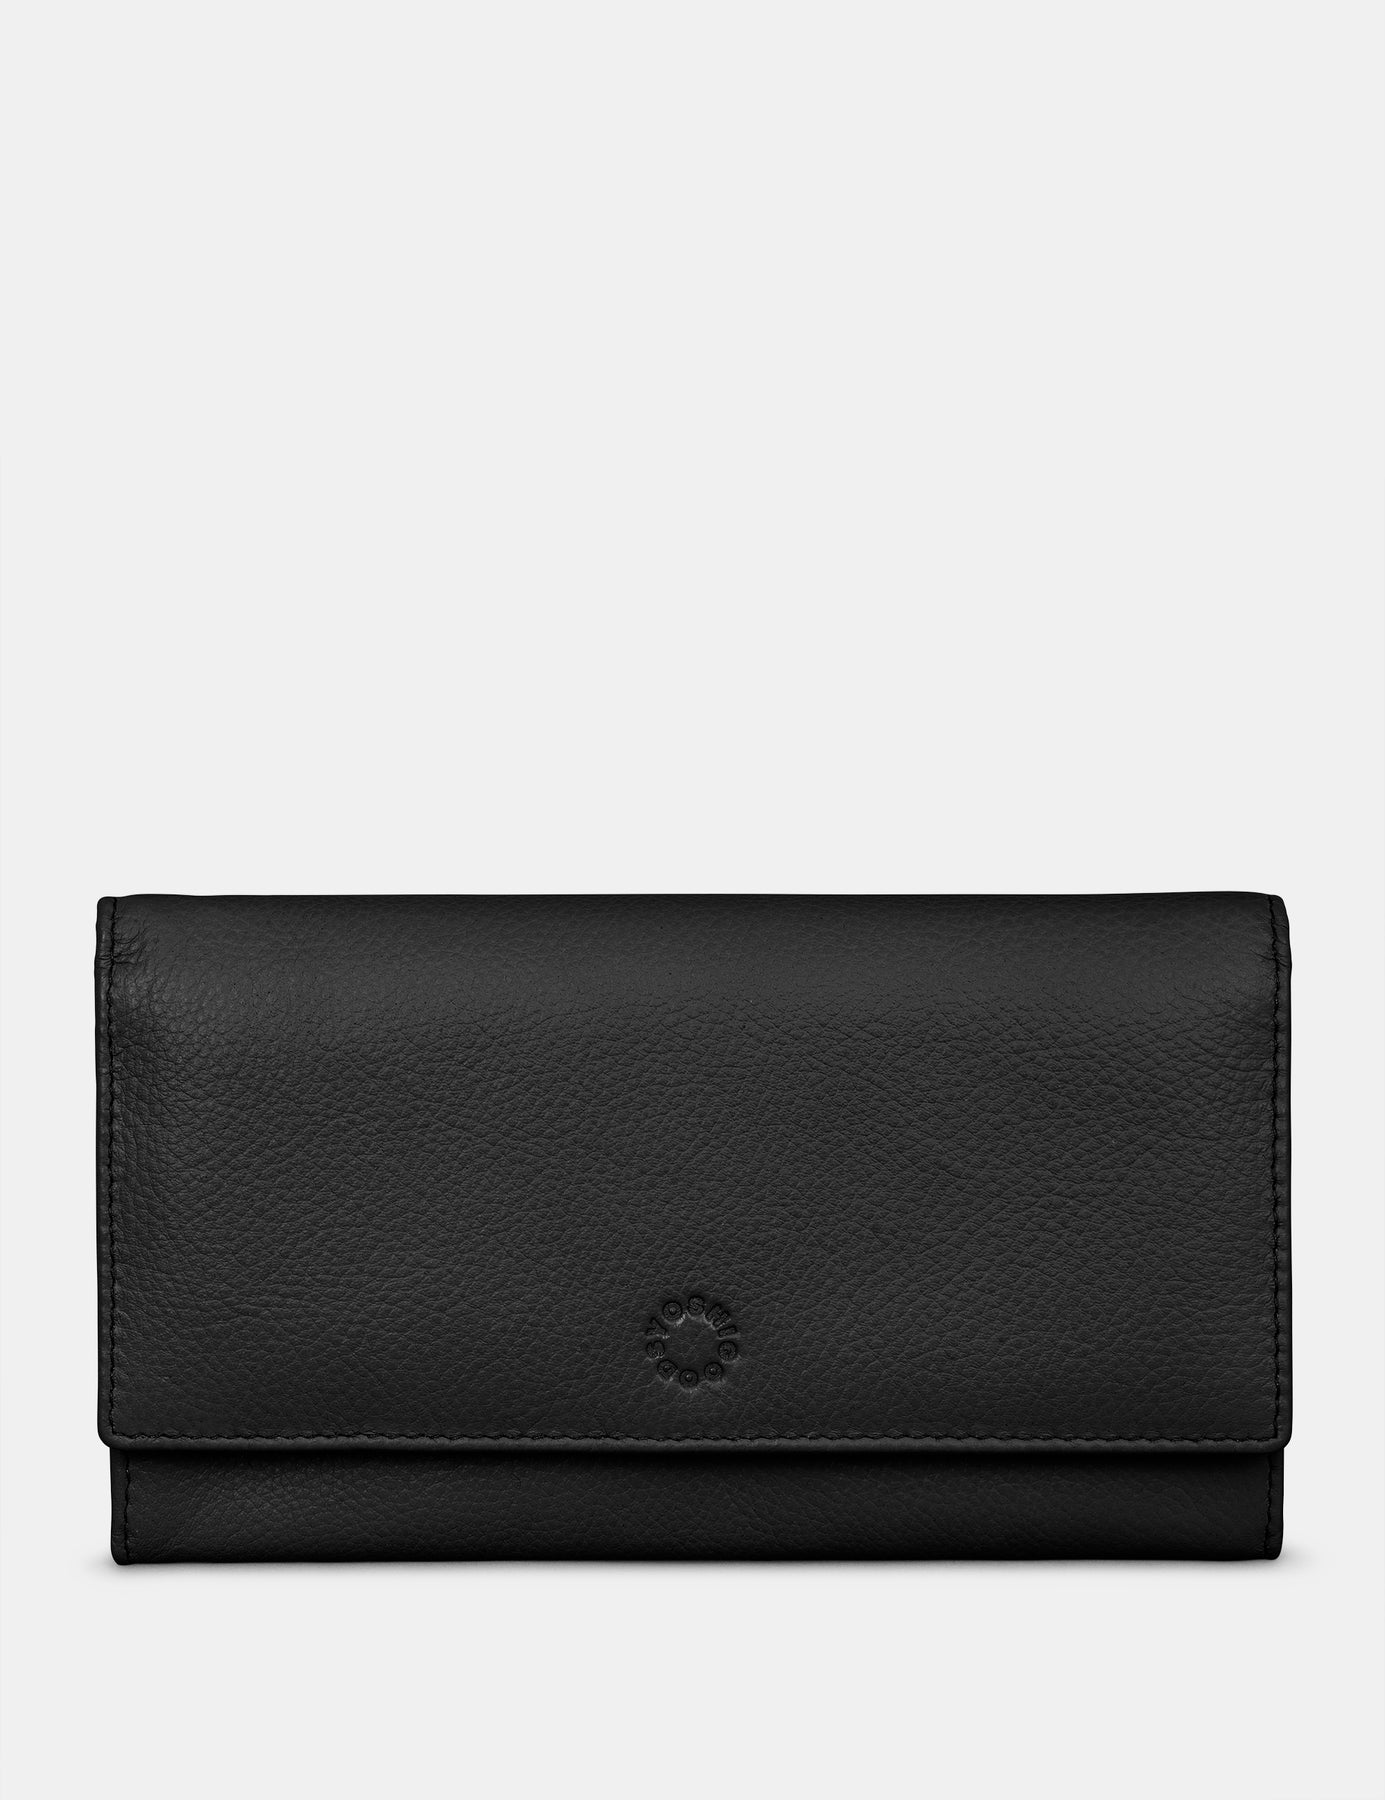 Louis Vuitton cuir glacé hobo patent leather bag